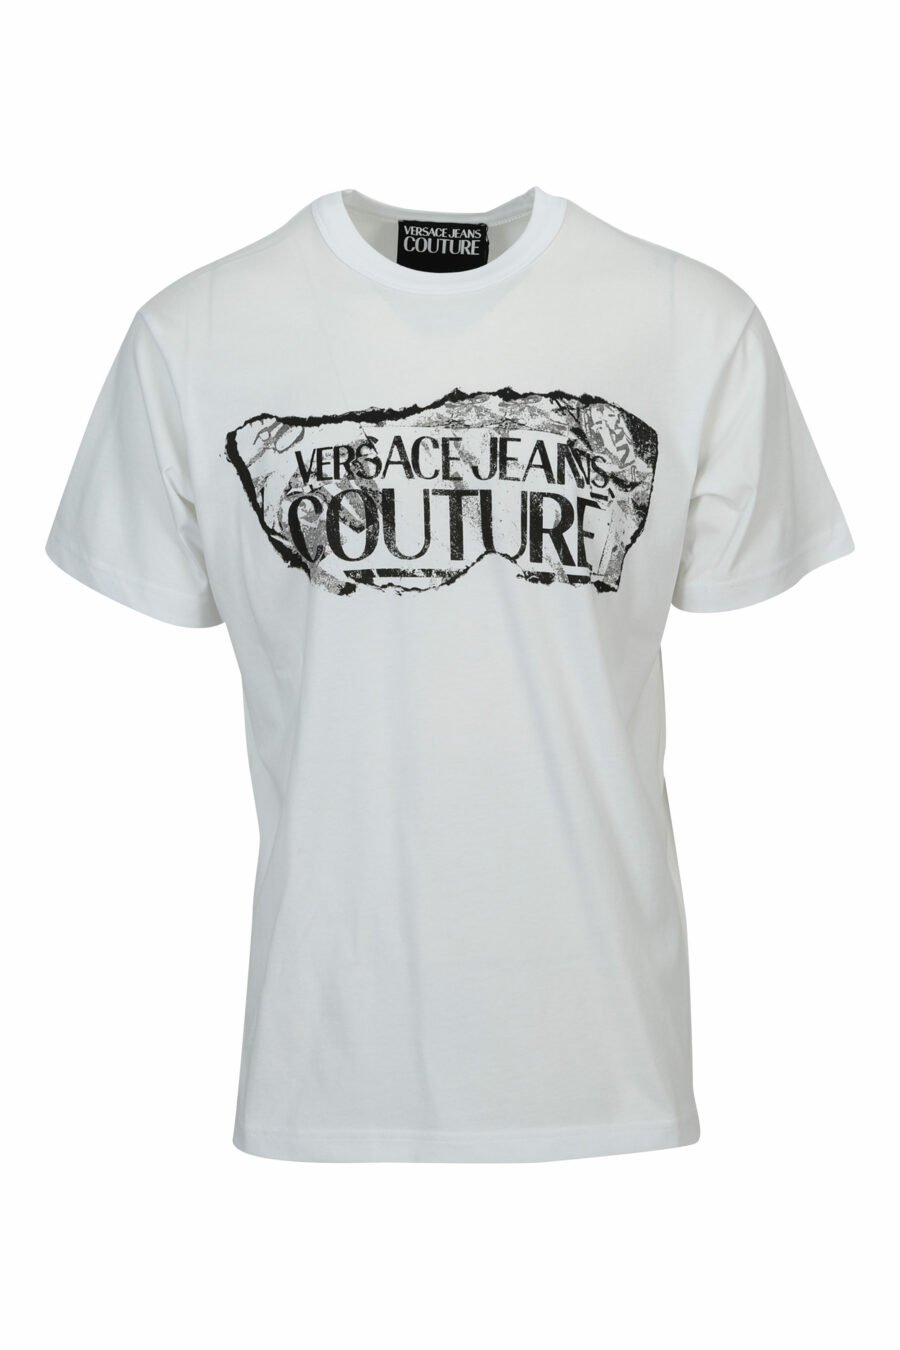 Camiseta blanca con maxilogo barroco rasgado - 8052019603101